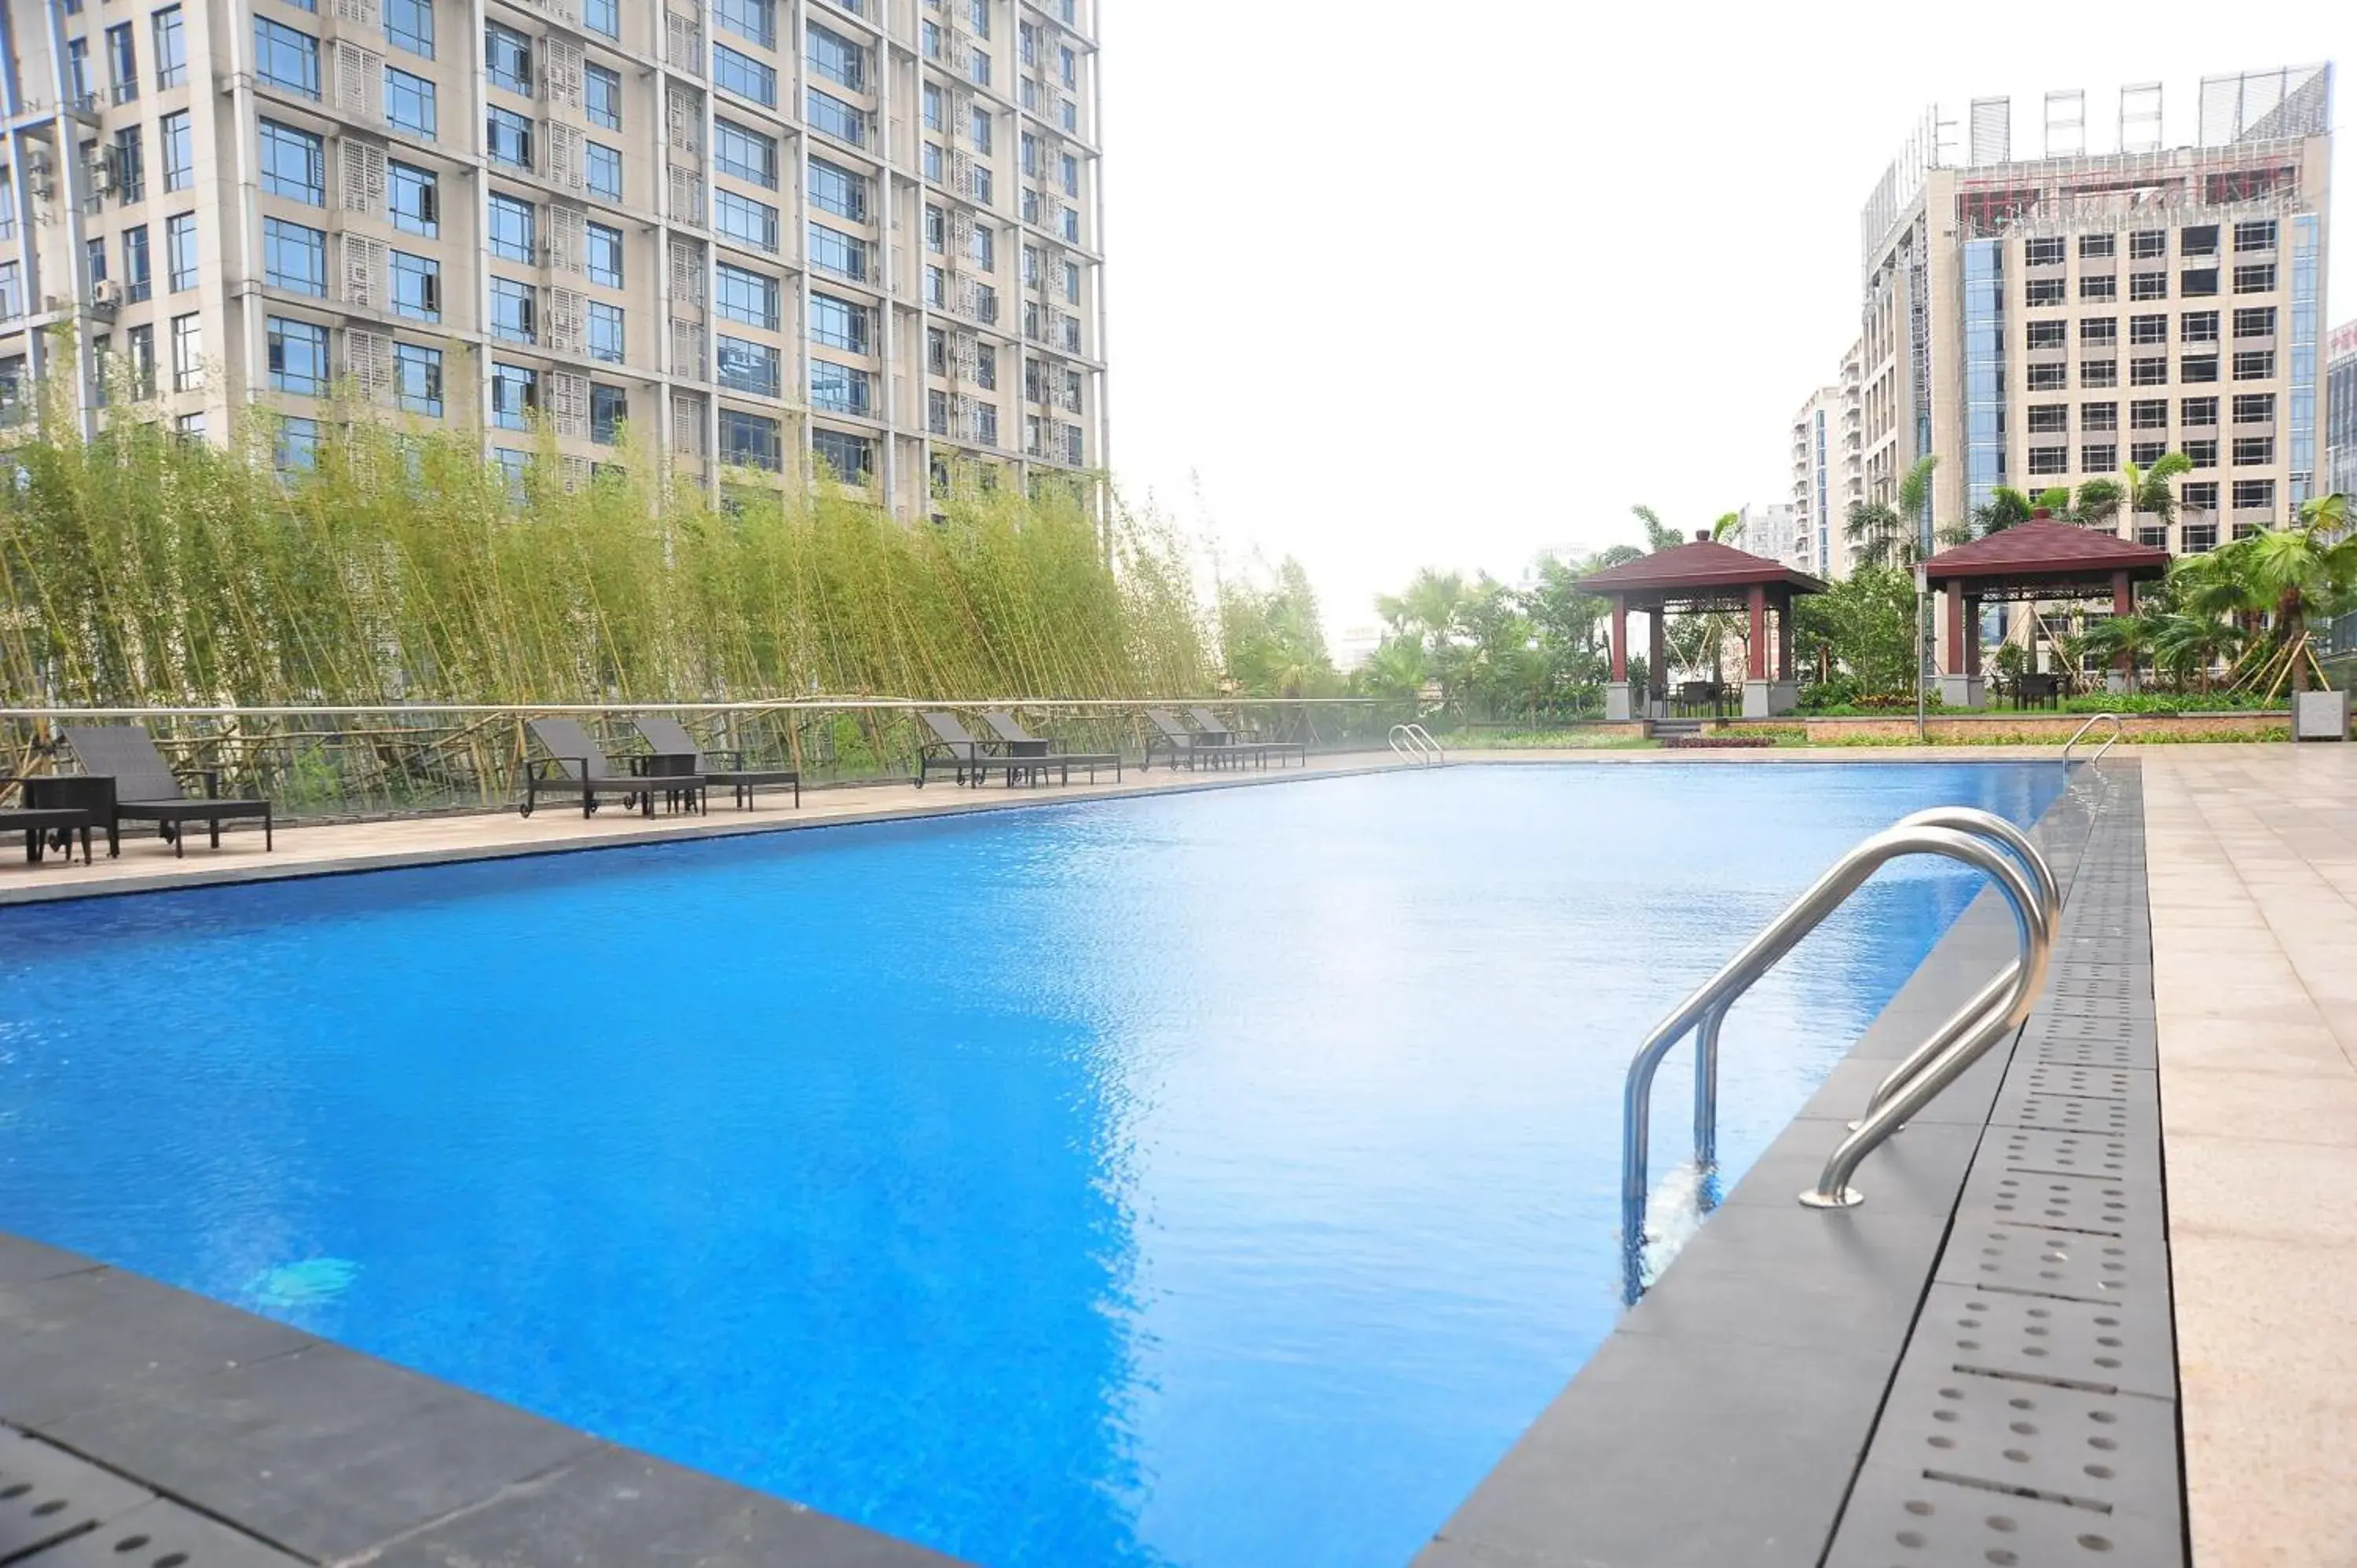 Swimming Pool in Kande International Hotel Dongguan